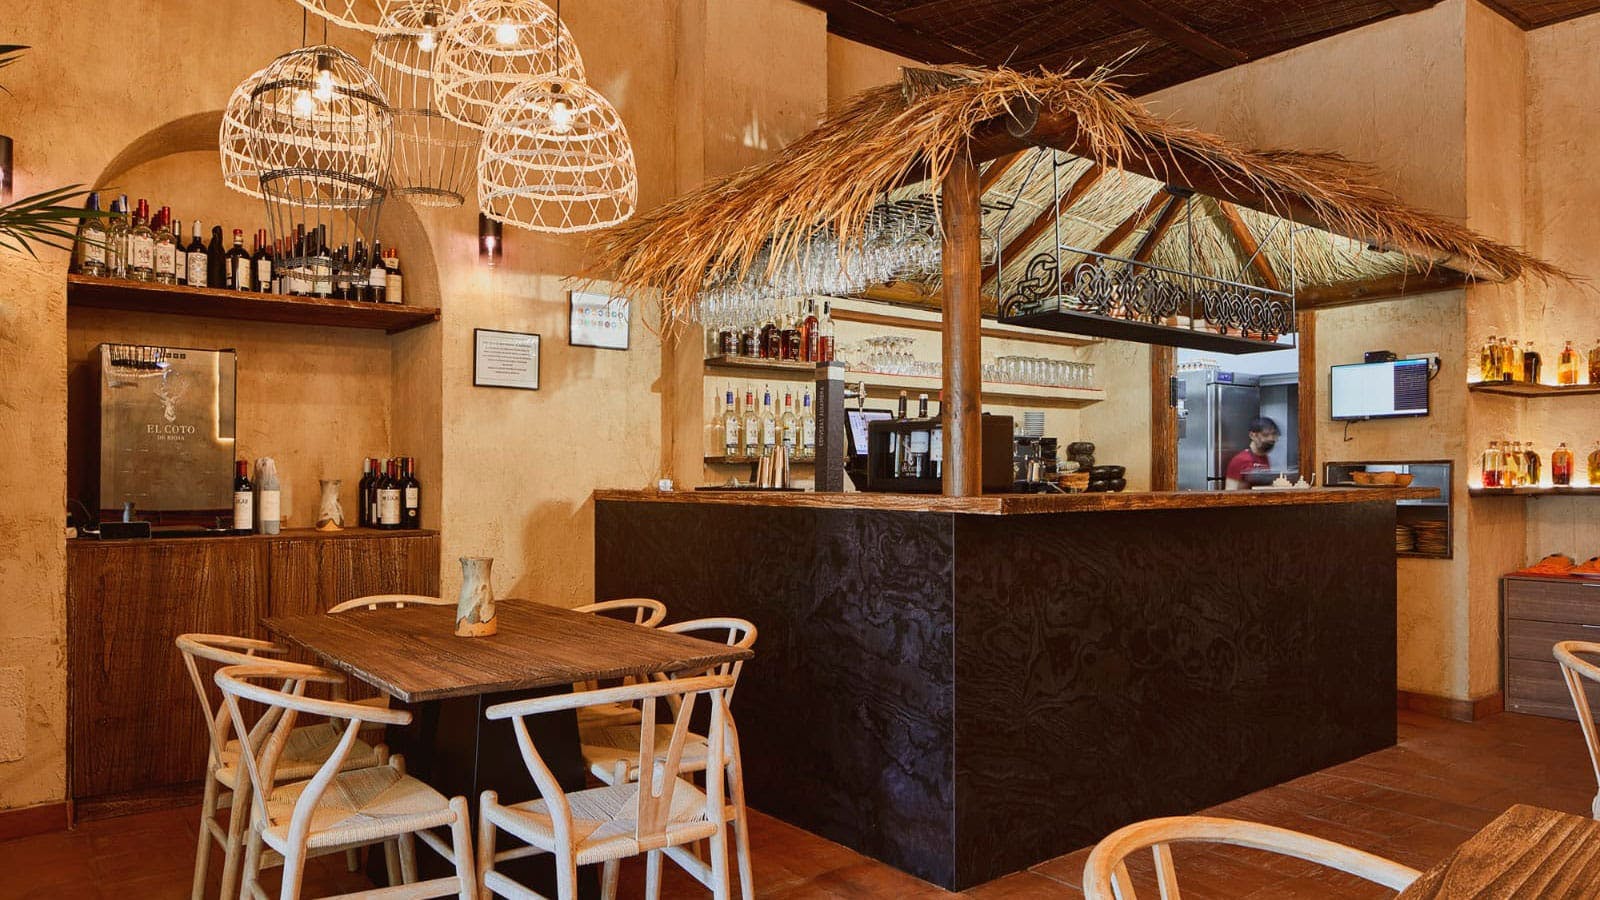 Imagem número 239 da actual secção de Restaurant Quipu - Página 2 de 3 da Cosentino Portugal